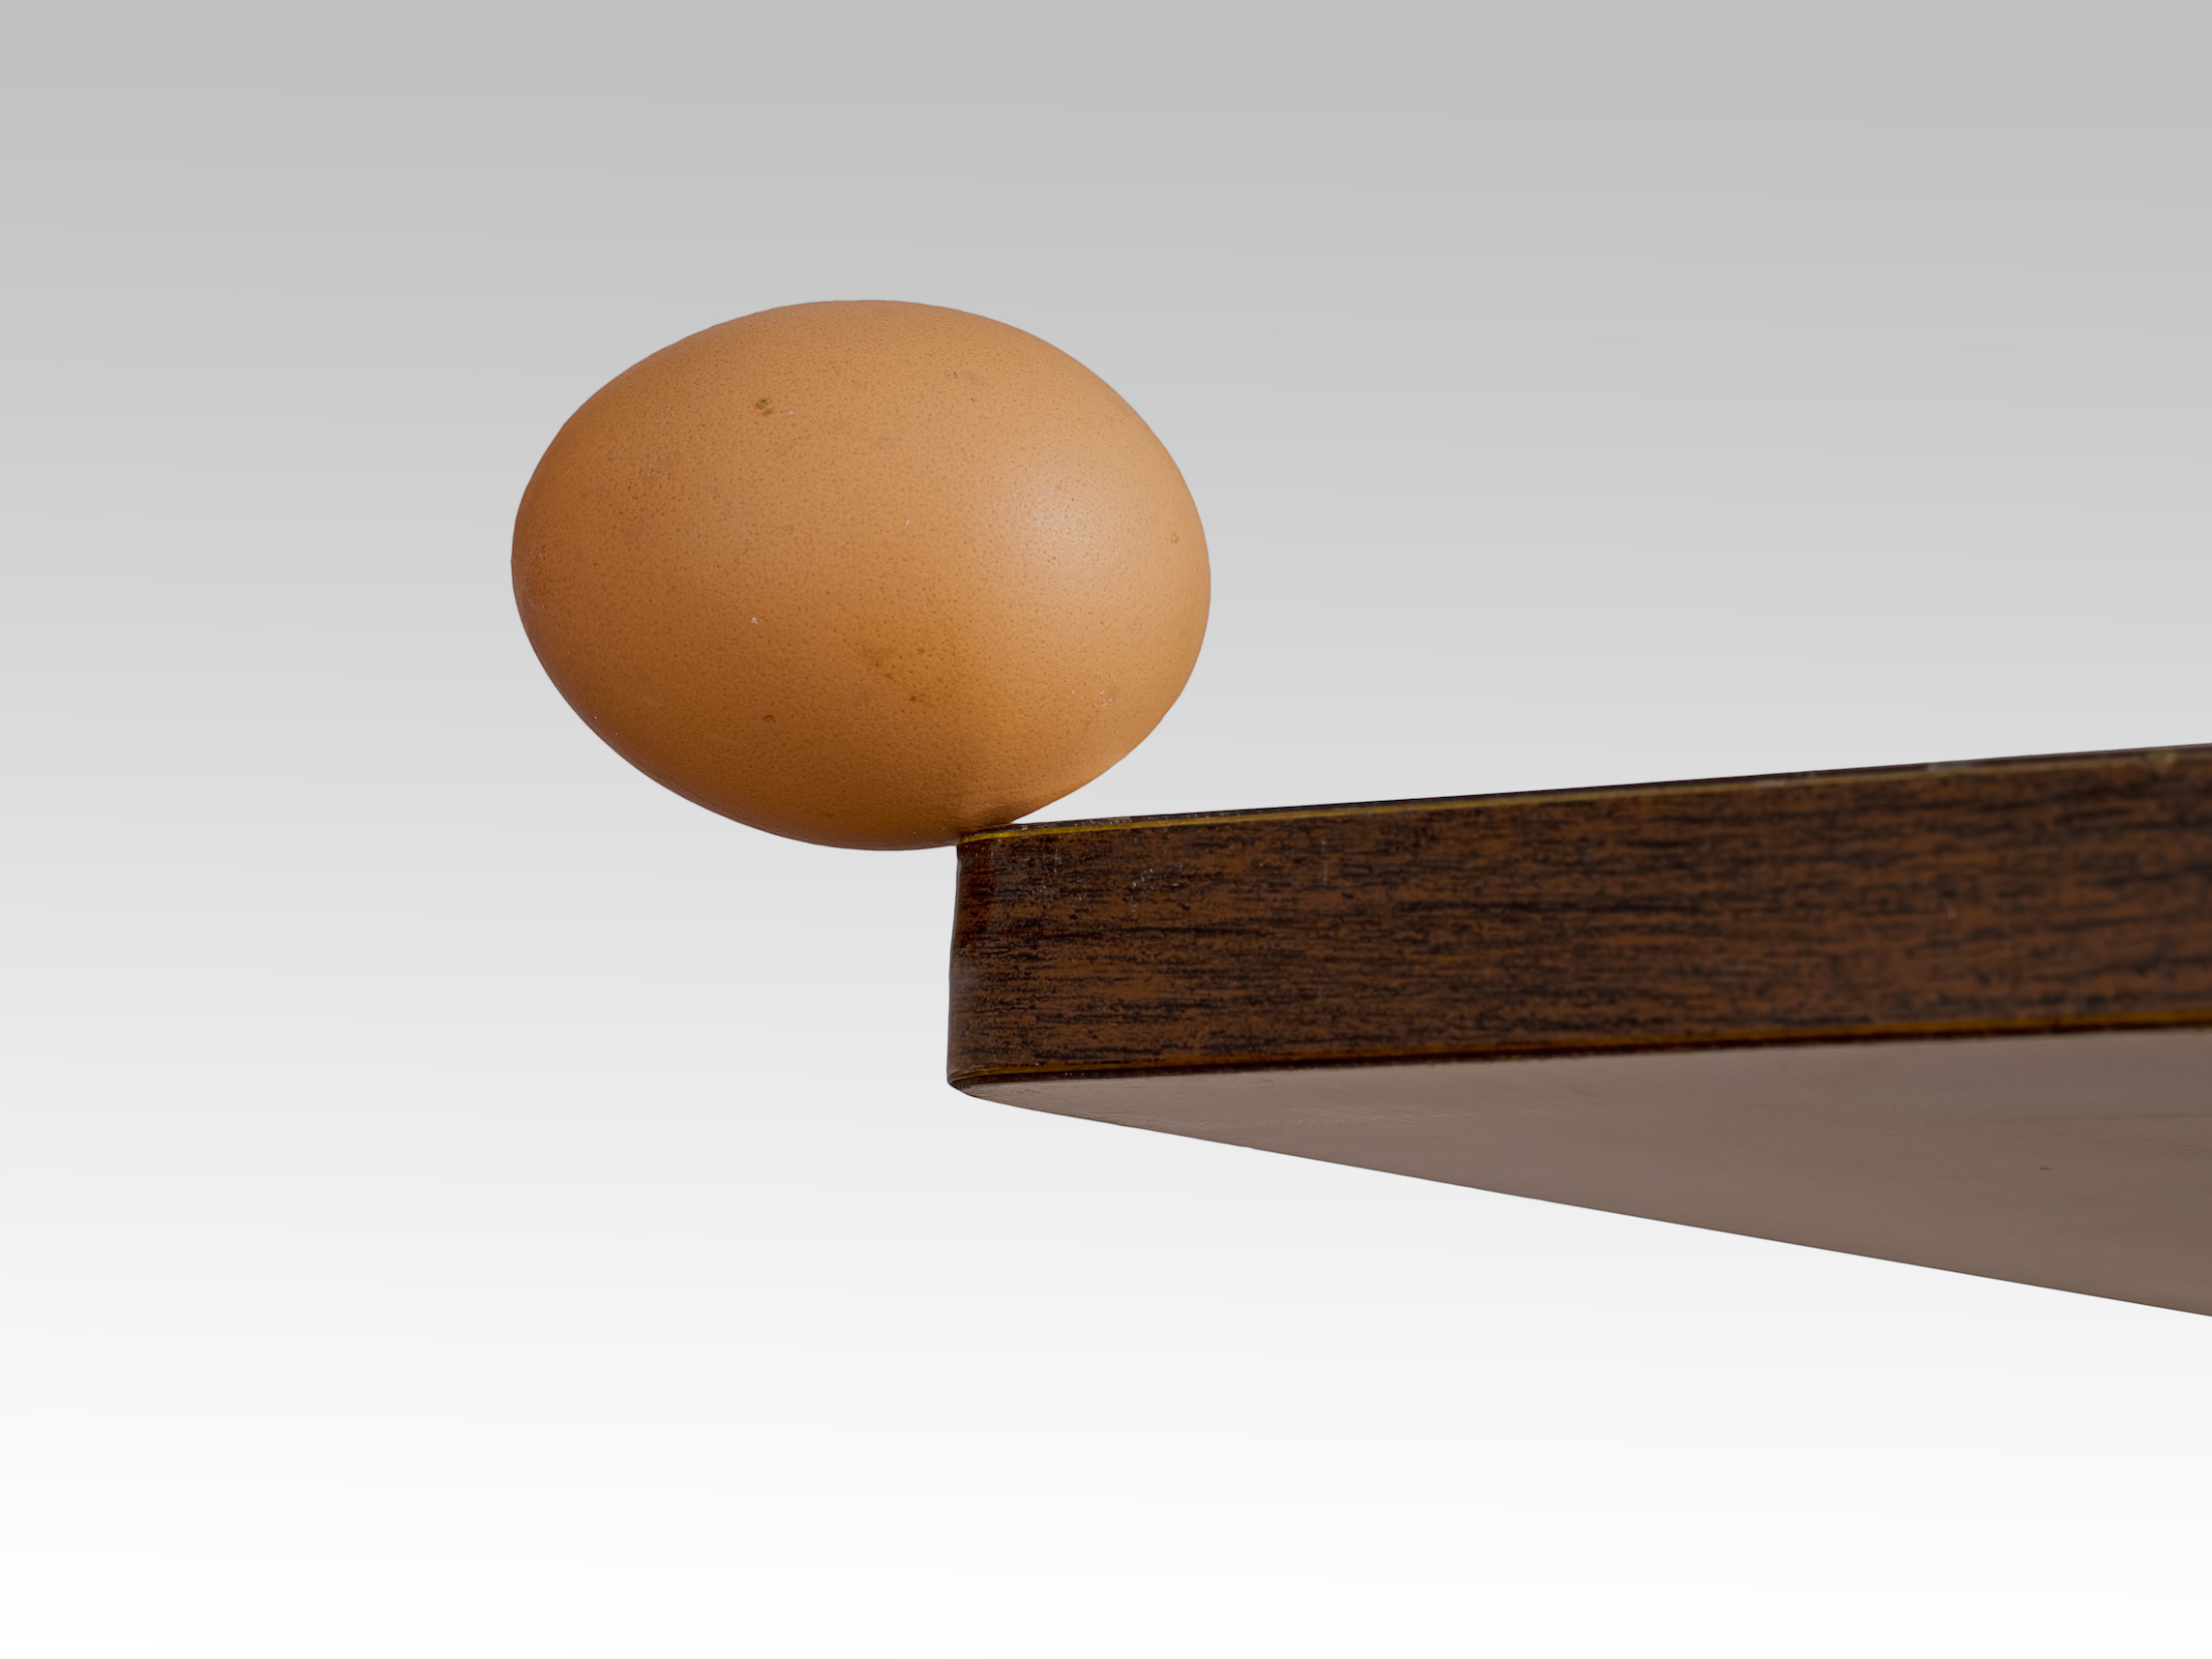 鸡蛋均匀地放在桌子边缘